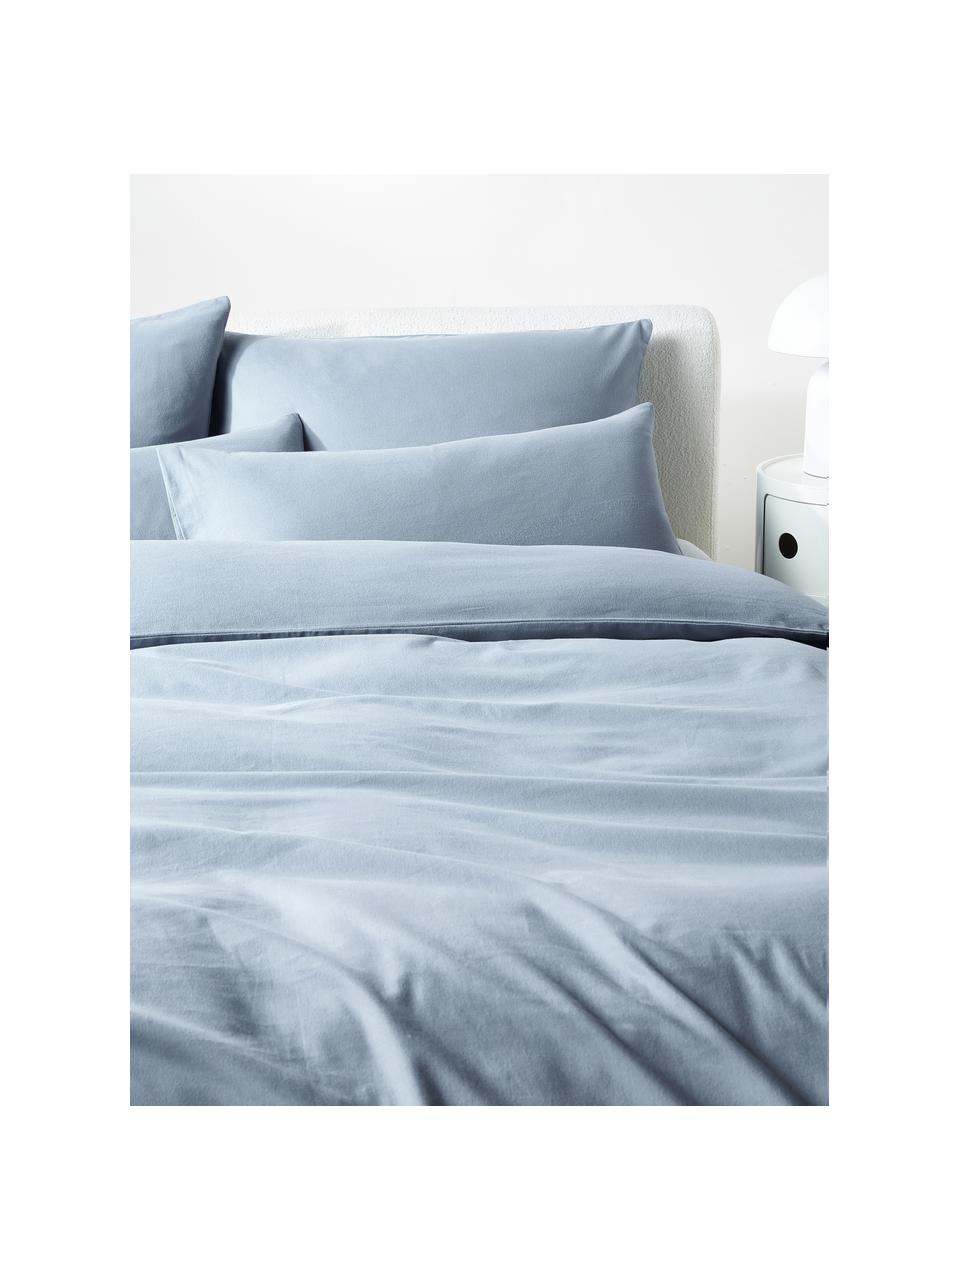 Poszewka na poduszkę z flaneli Biba, Jasny niebieski, S 40 x D 80 cm